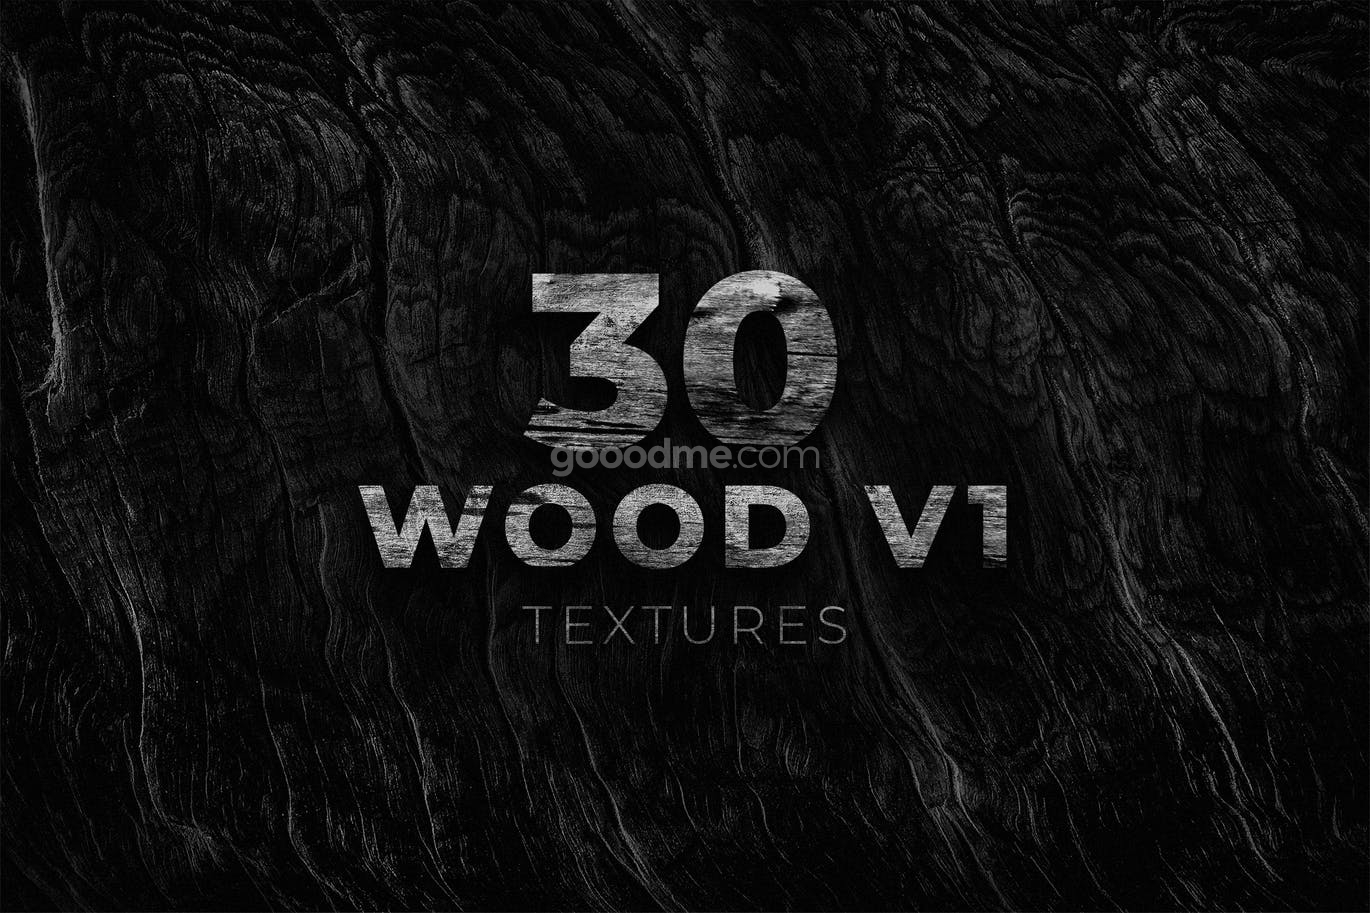 804 高分辨率的黑白色木质纹理背景图片素材 Wood V1 Texture Pack